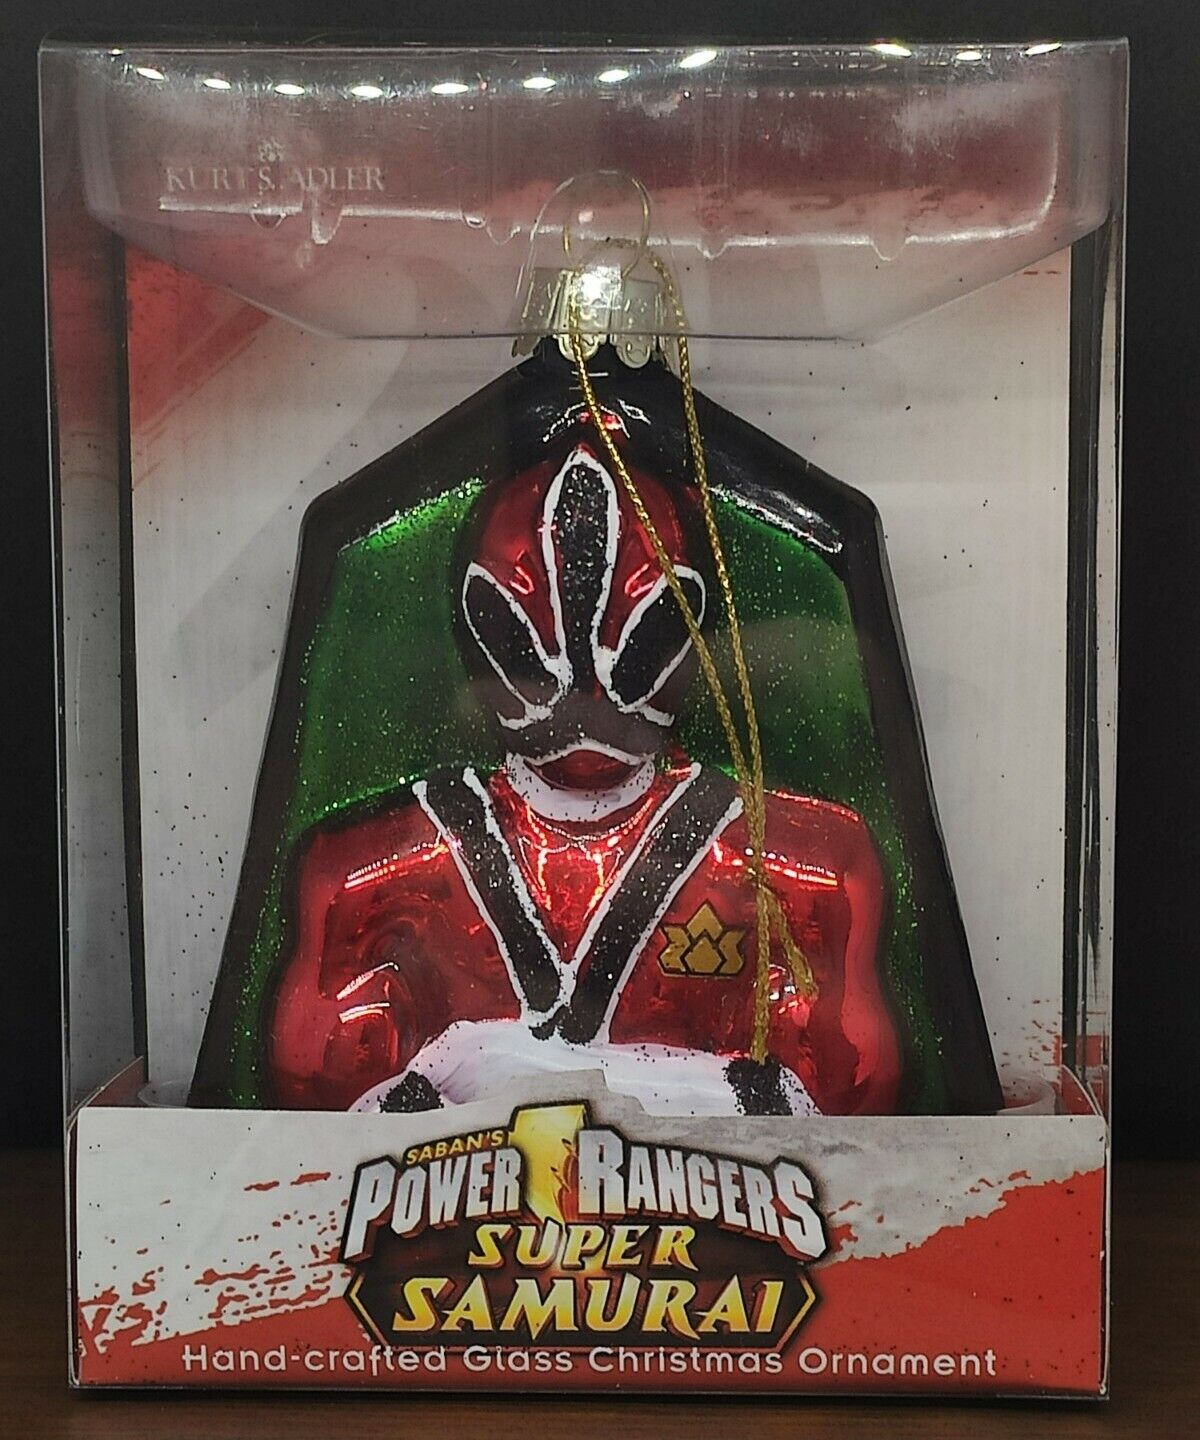 Kurt Adler Handcrafted Glass Ornament- Sabans Power Rangers Super Samurai C4